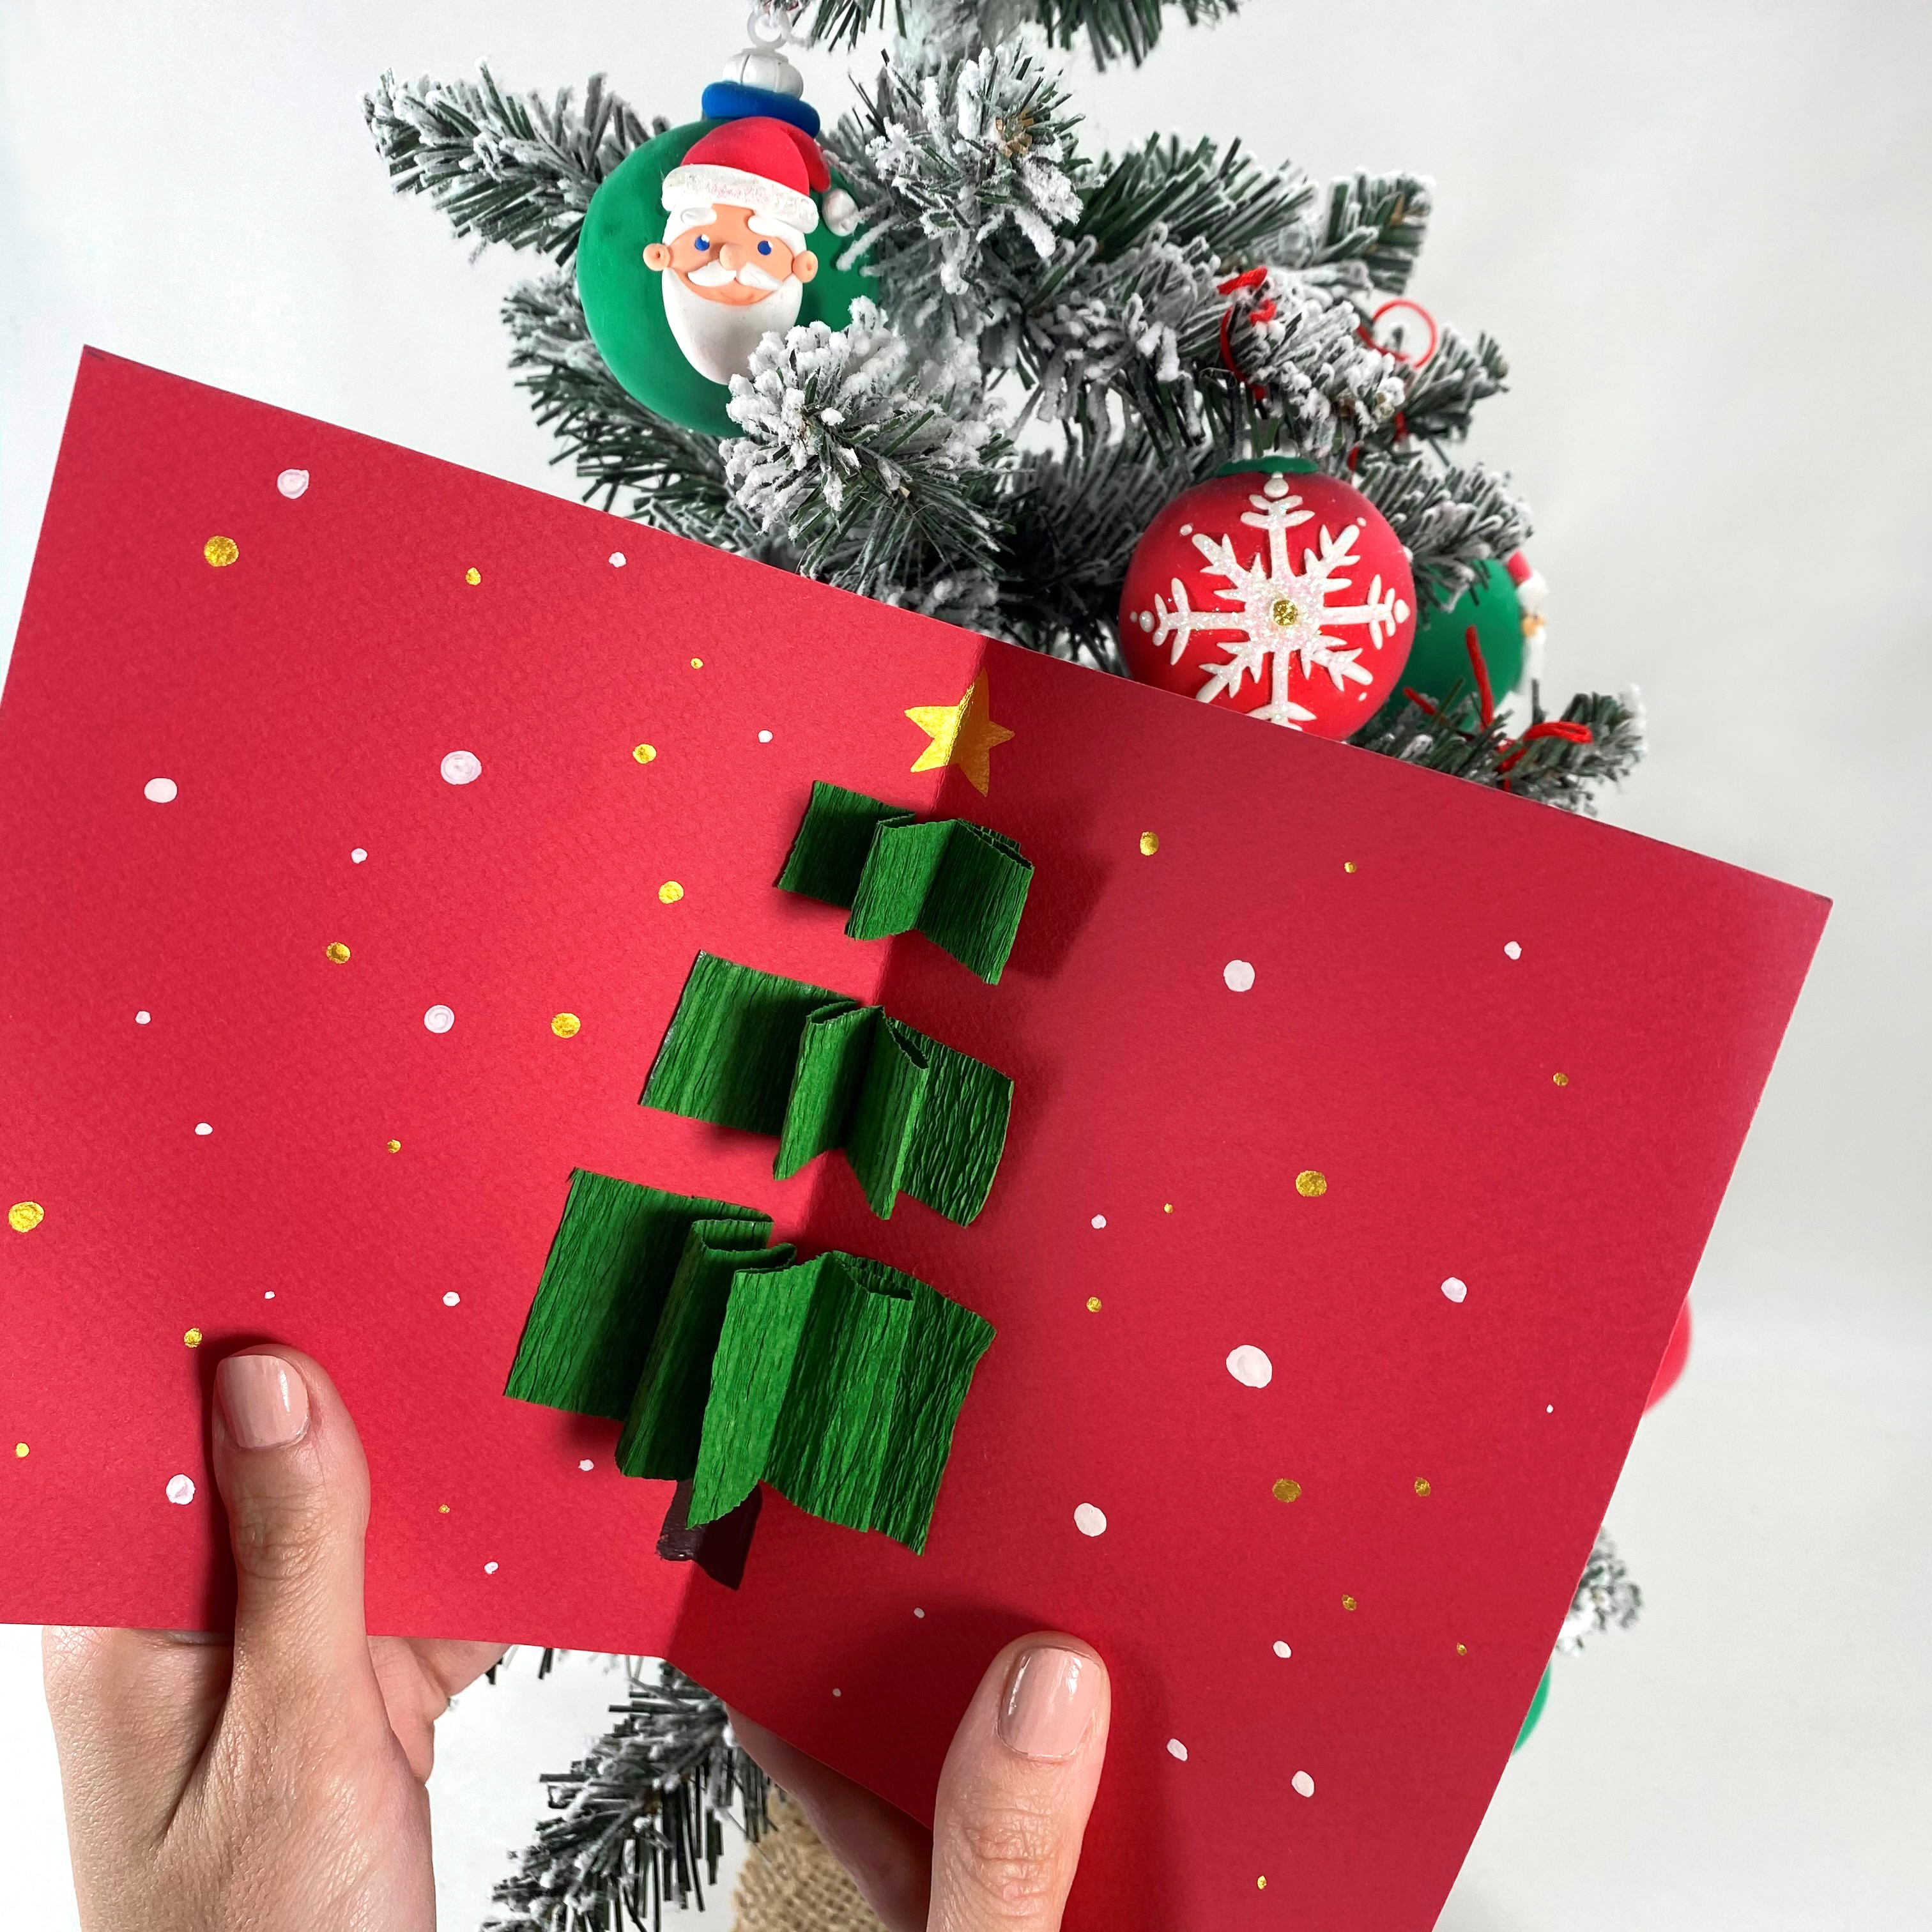 Ecrivez votre plus belle carte de Noël et envoyez-la à un être cher